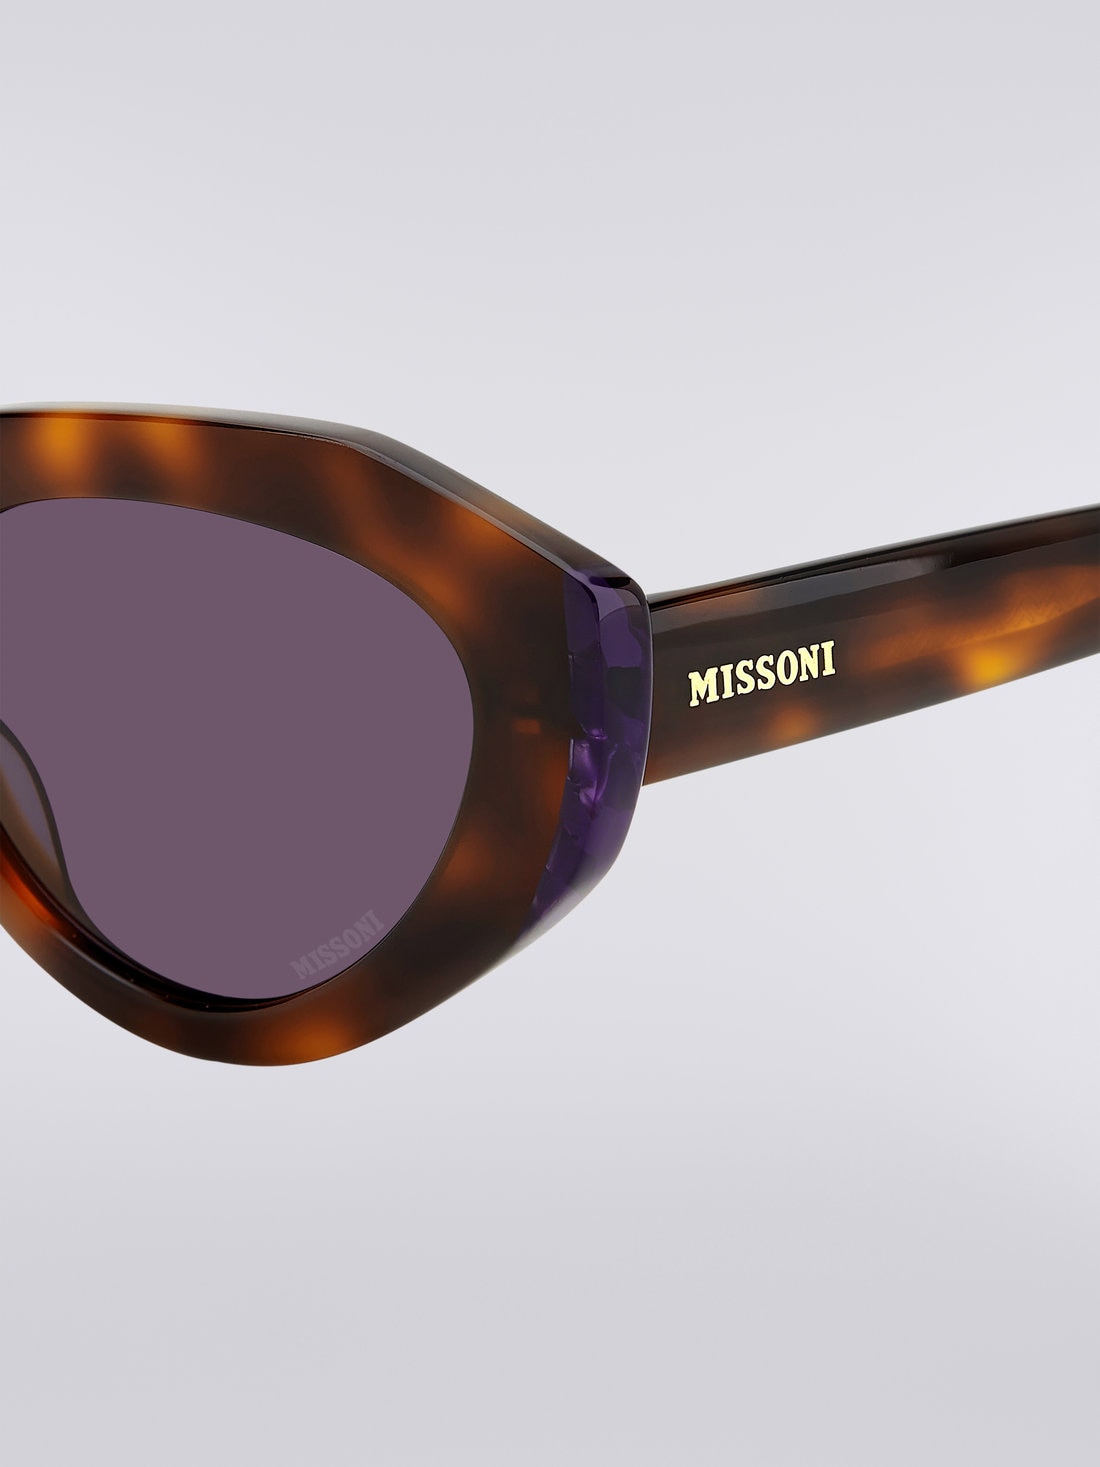 Missoni Seasonal Acetate Sunglasses, Multicoloured  - 8051575840173 - 3